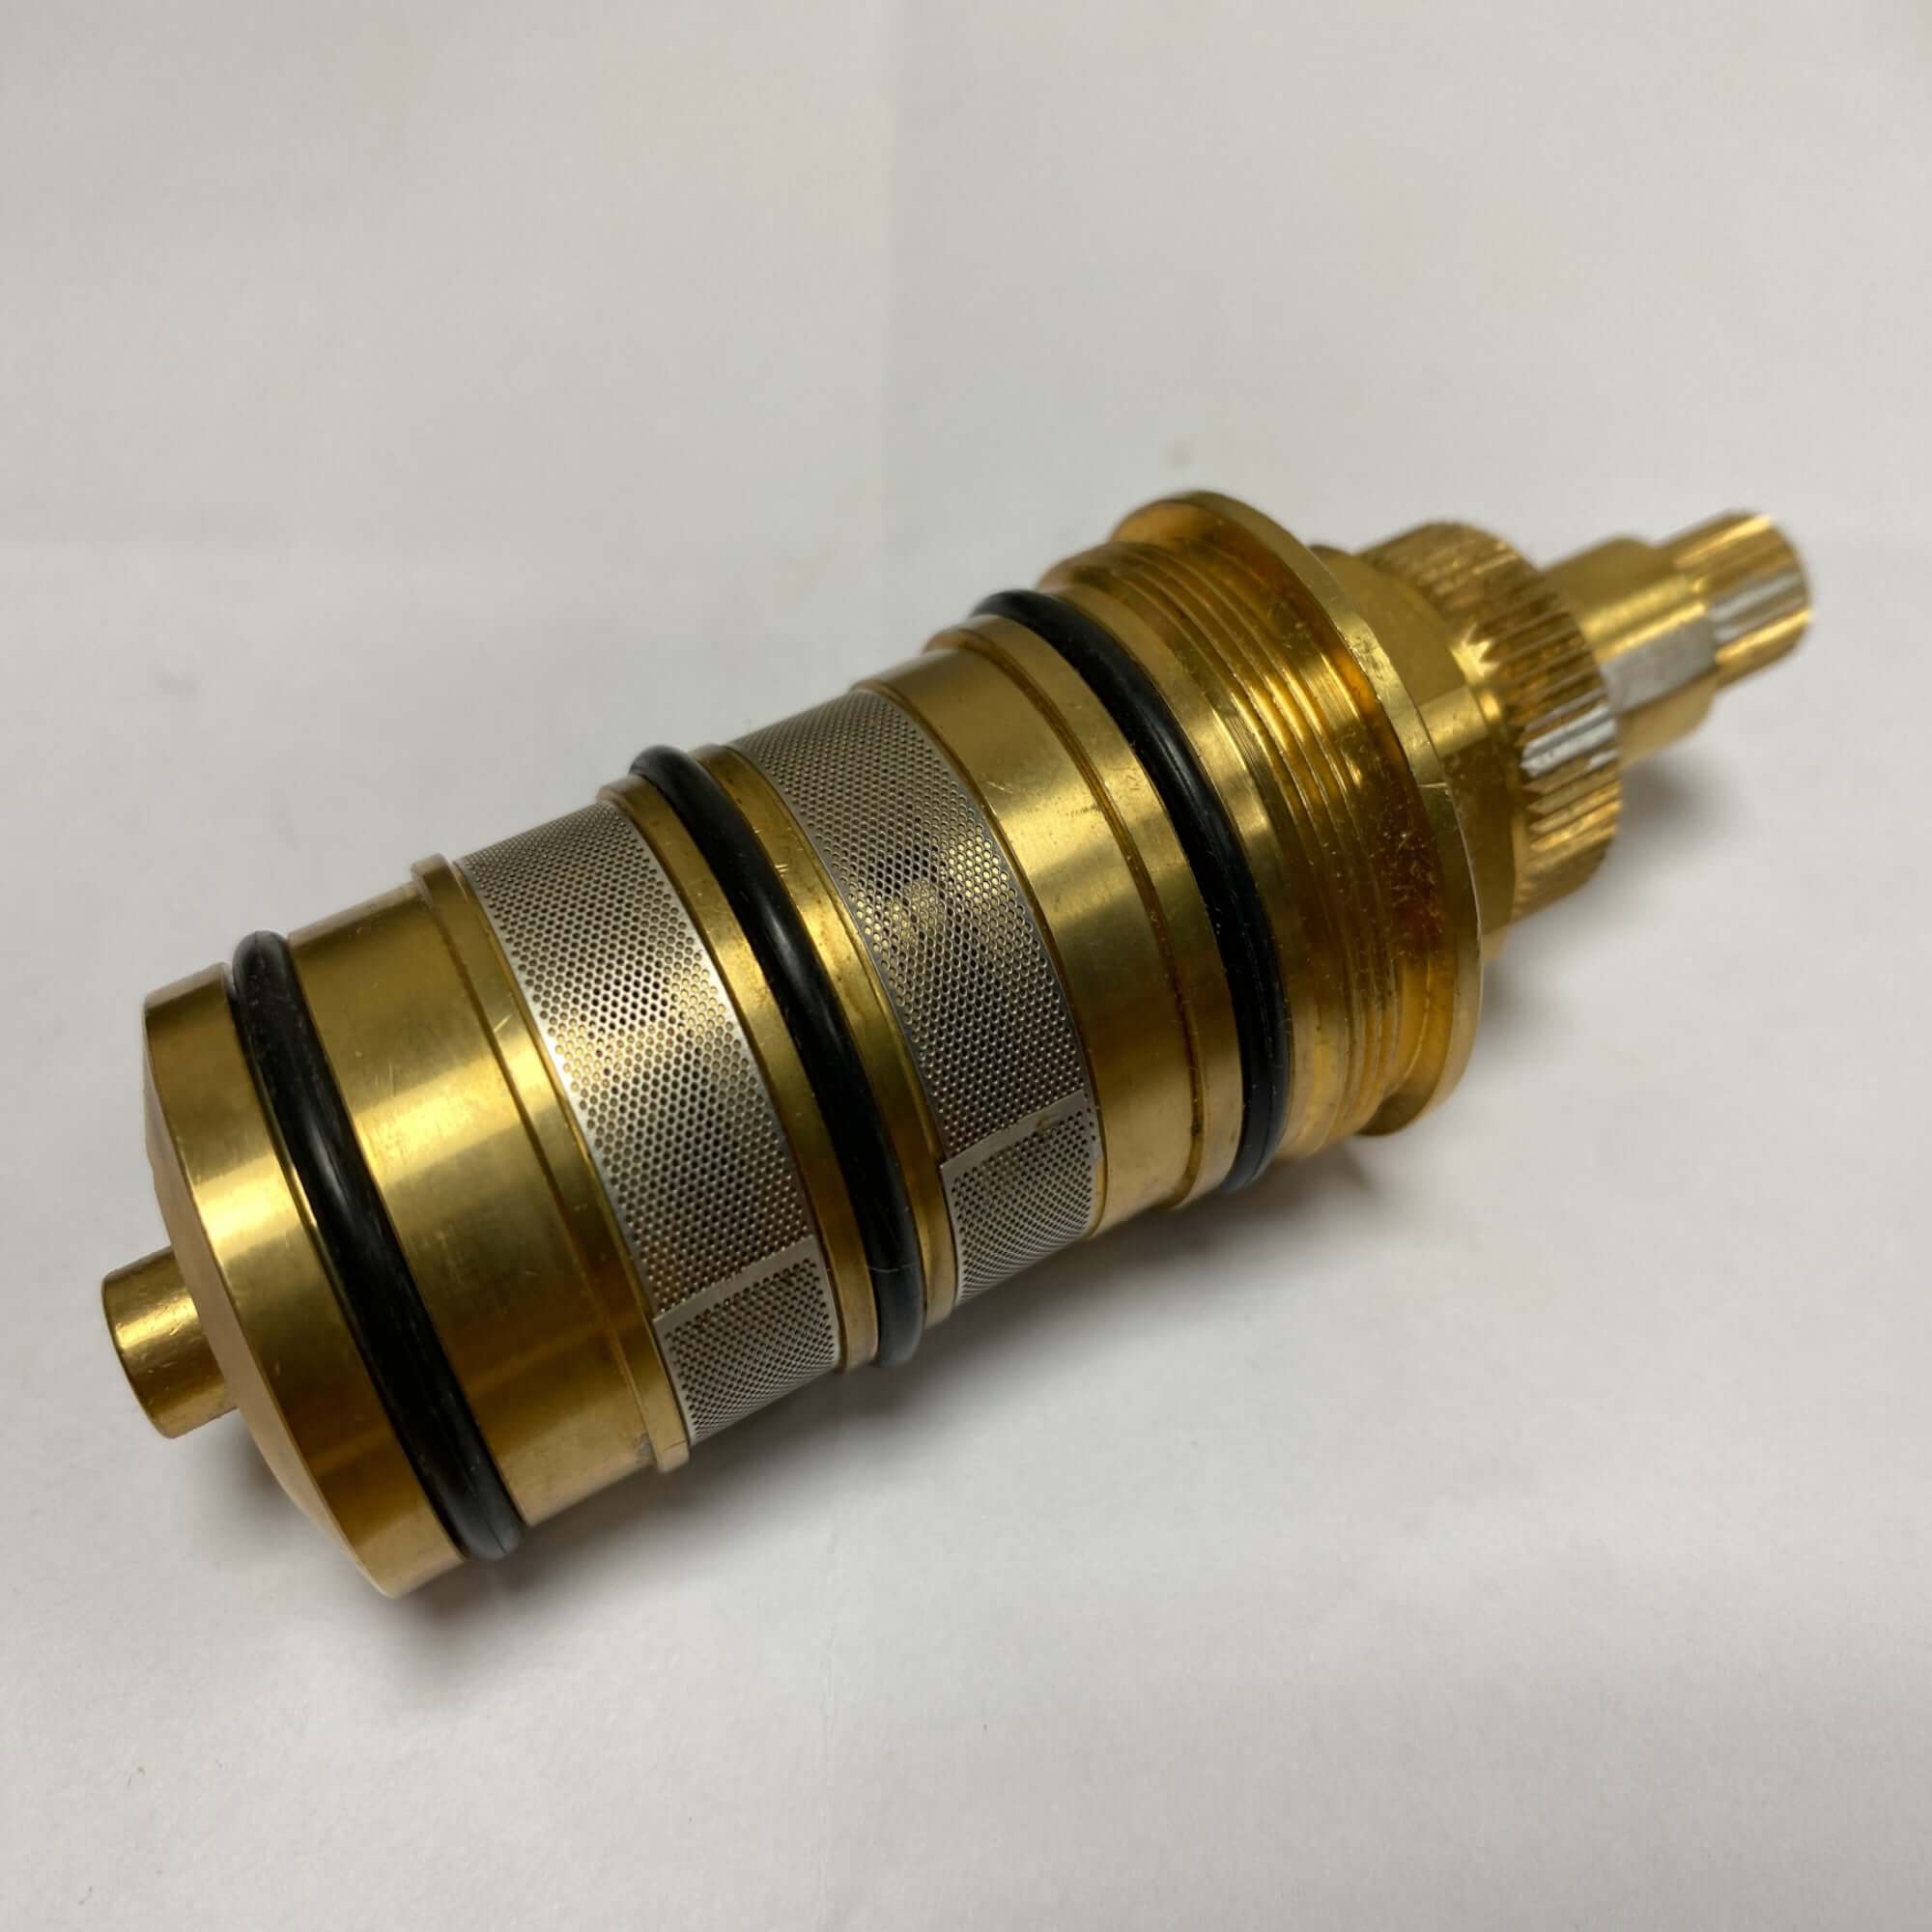 Thermostatic cartridge for shower valves - Old Regent